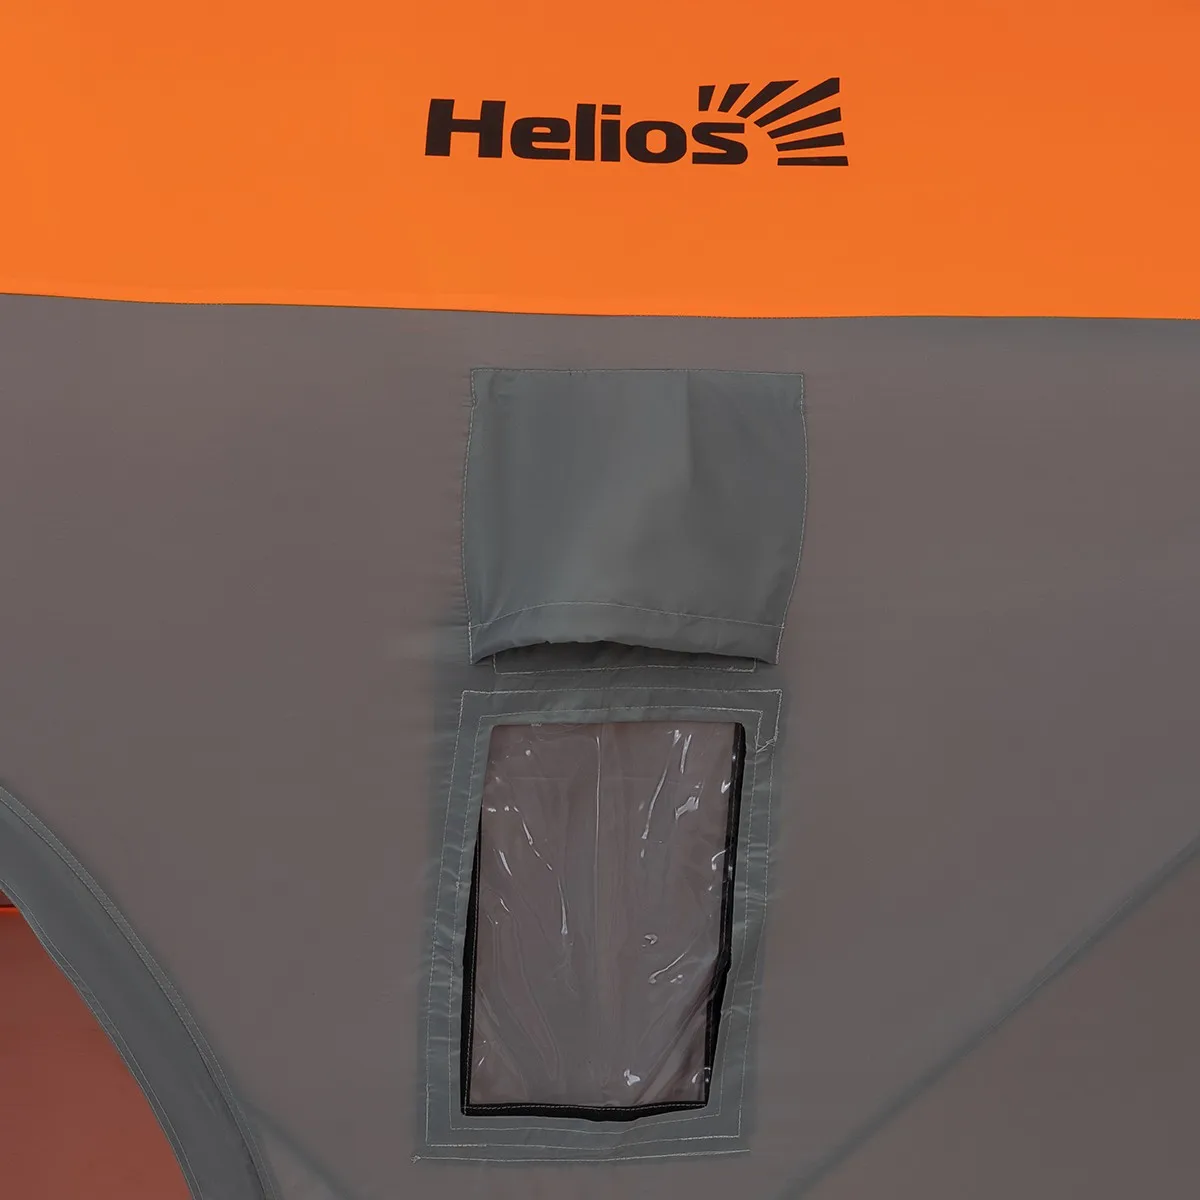 Šotor pozimi kocke 1,5x1.5 Oranžna Lumi/siva Helios (hs-gnome-user-150olg) za ice ribolov z ribiško palico in sladoled